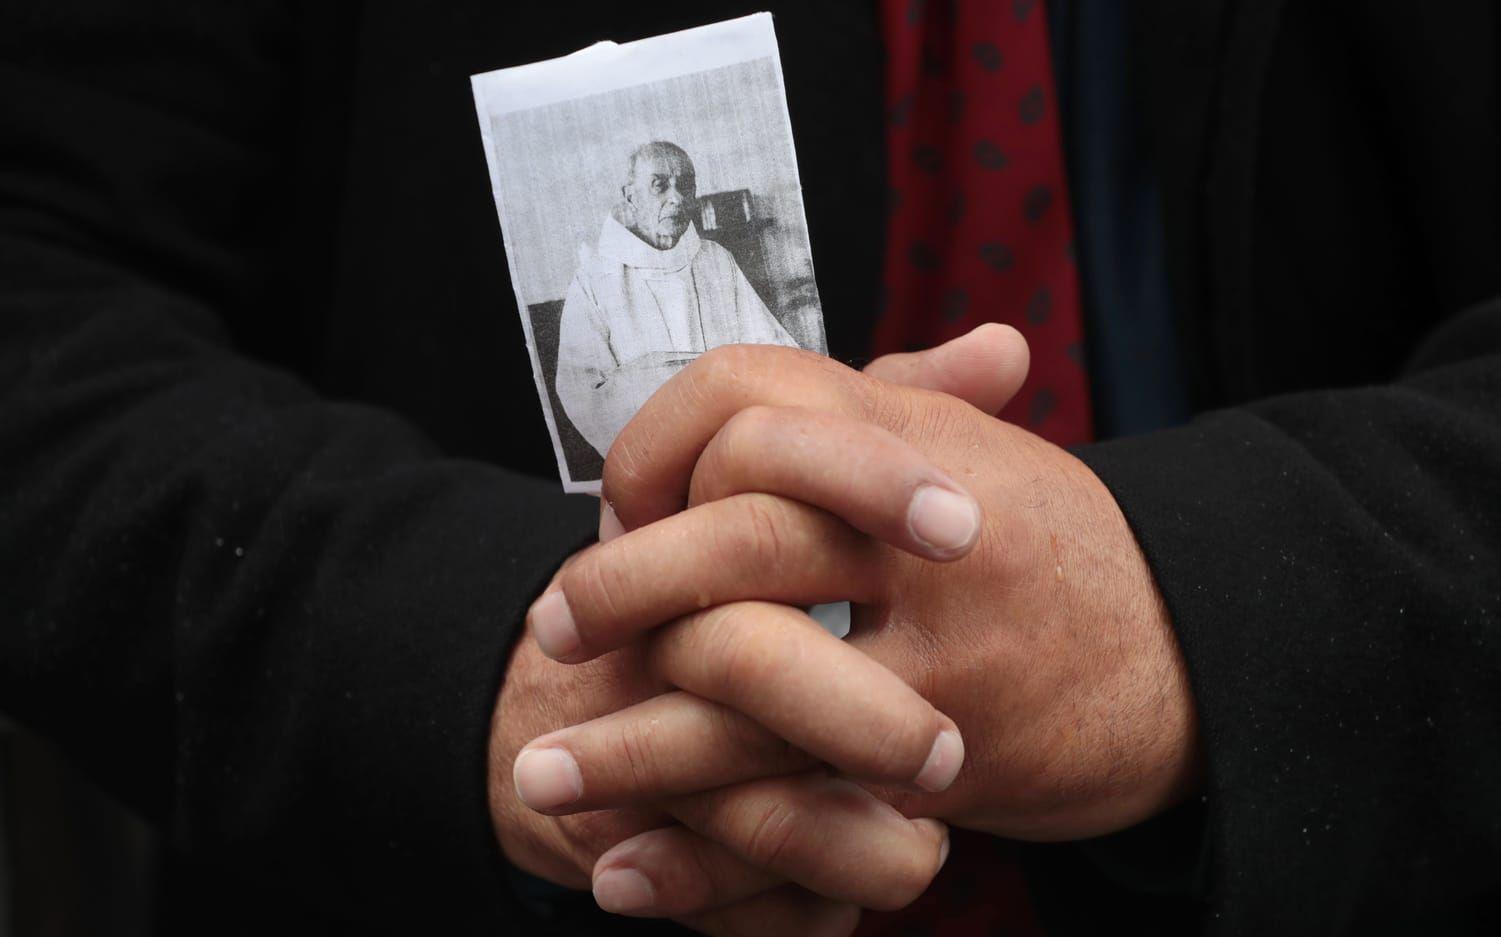 En åskådare höll upp en bild på Jacques Hamel och knöt sina händer i bön utanför katedralen. Bild: TT